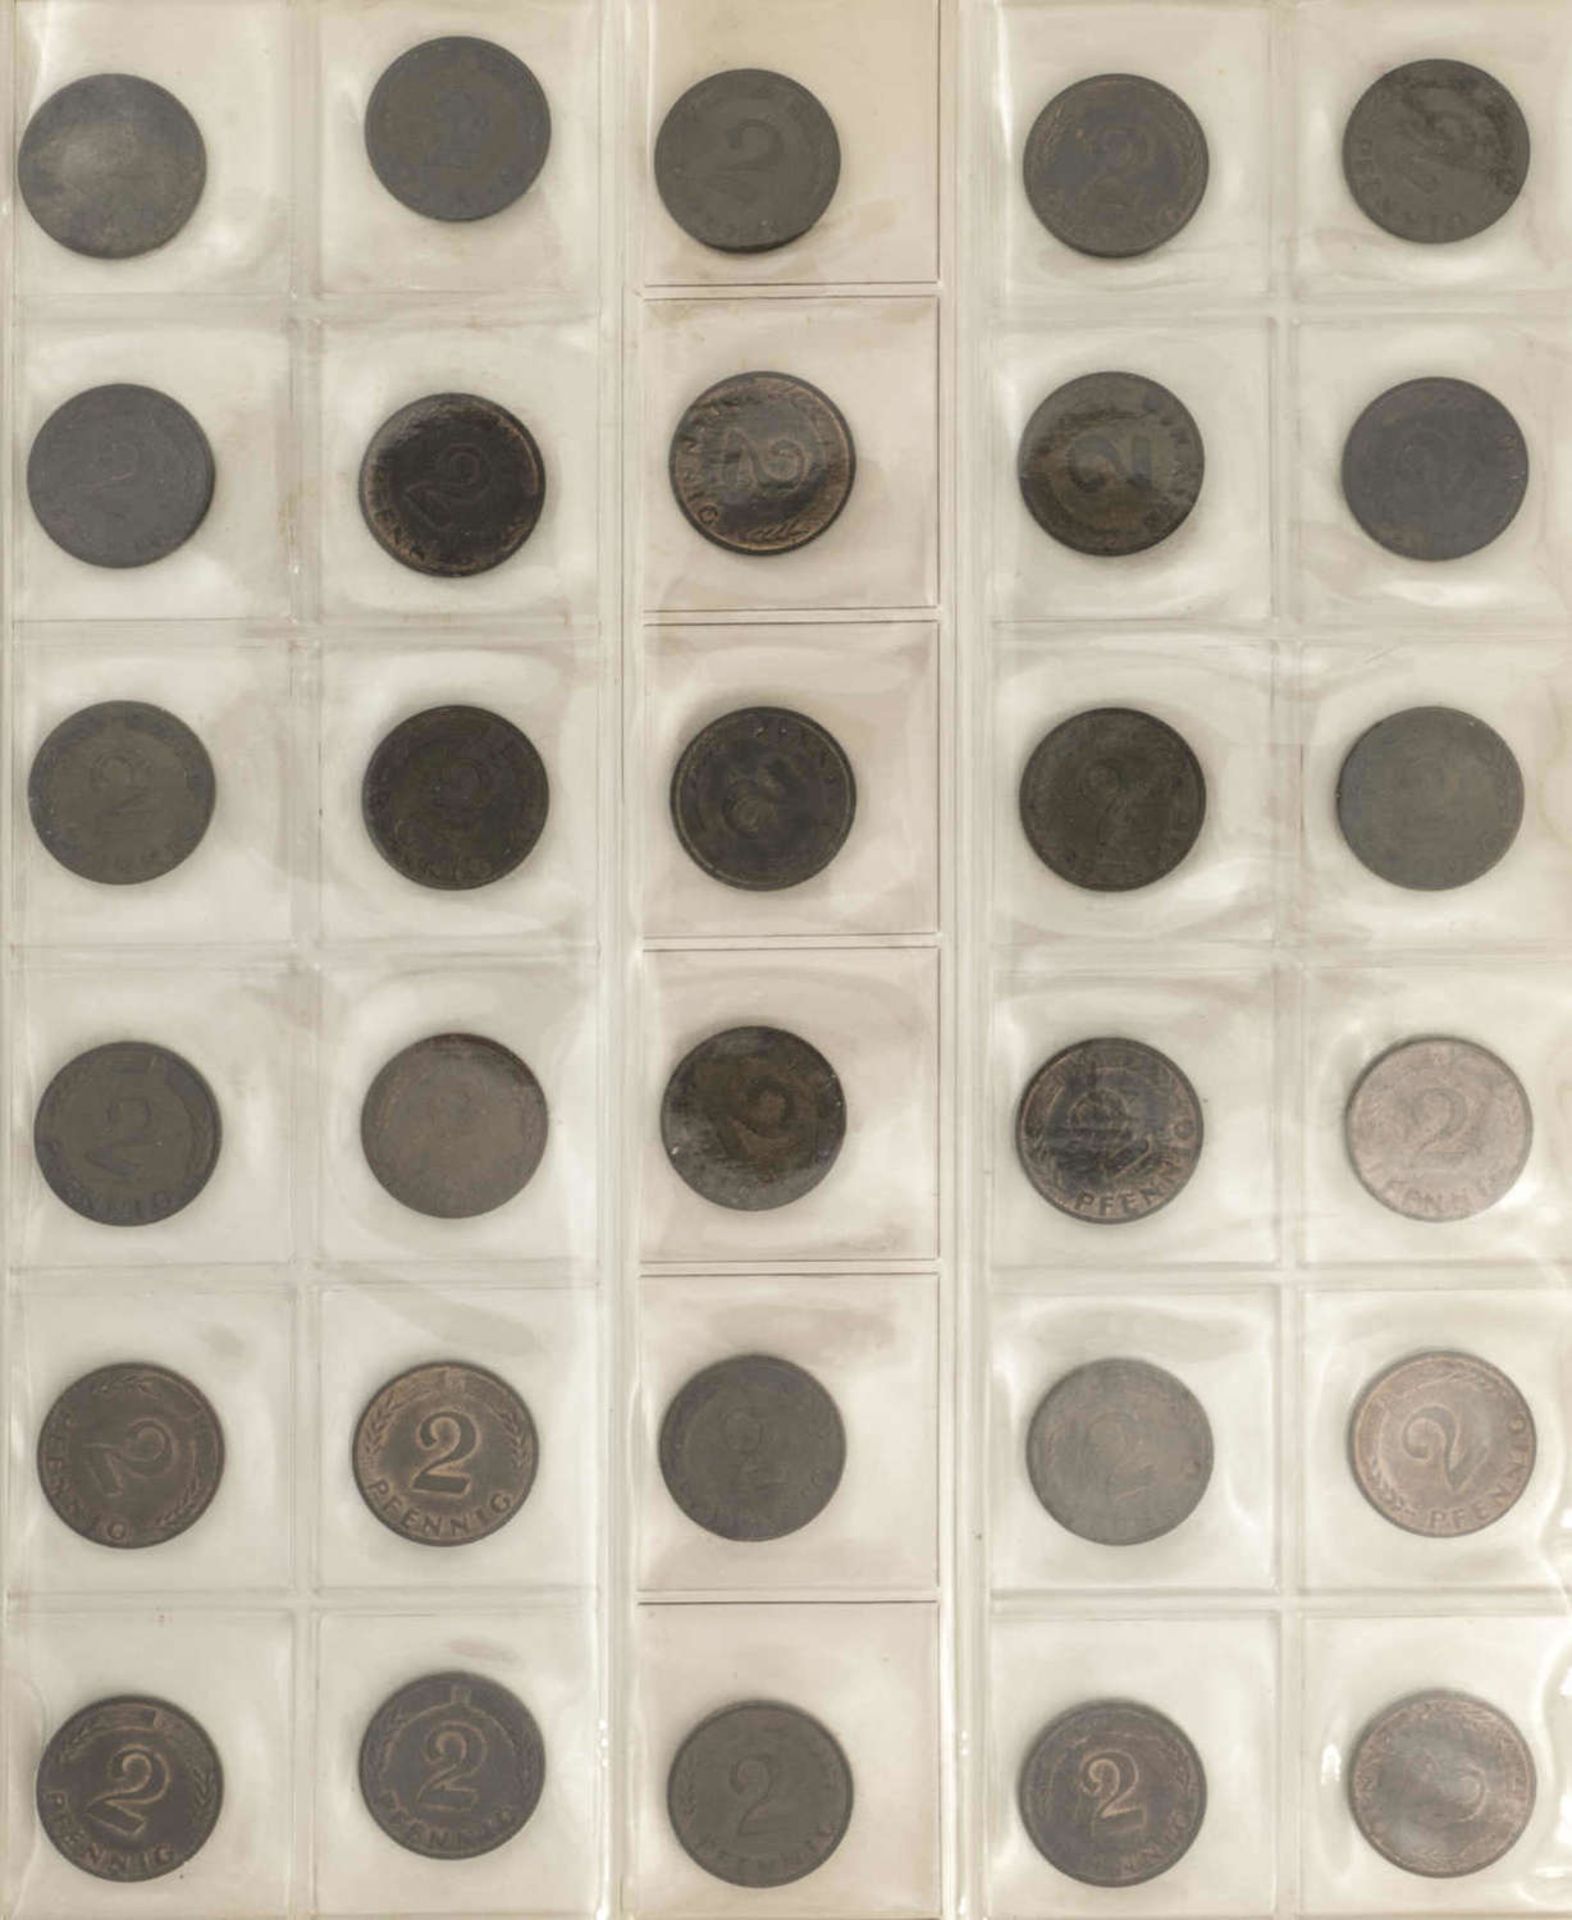 BRD Sammlung 1 Pfennig und 2 Pfennig - Münzen. Dabei: 1 Pfennig: 1948 - 50 DFGJ, 1966 - 85 DFGJ, 1 - Image 2 of 6